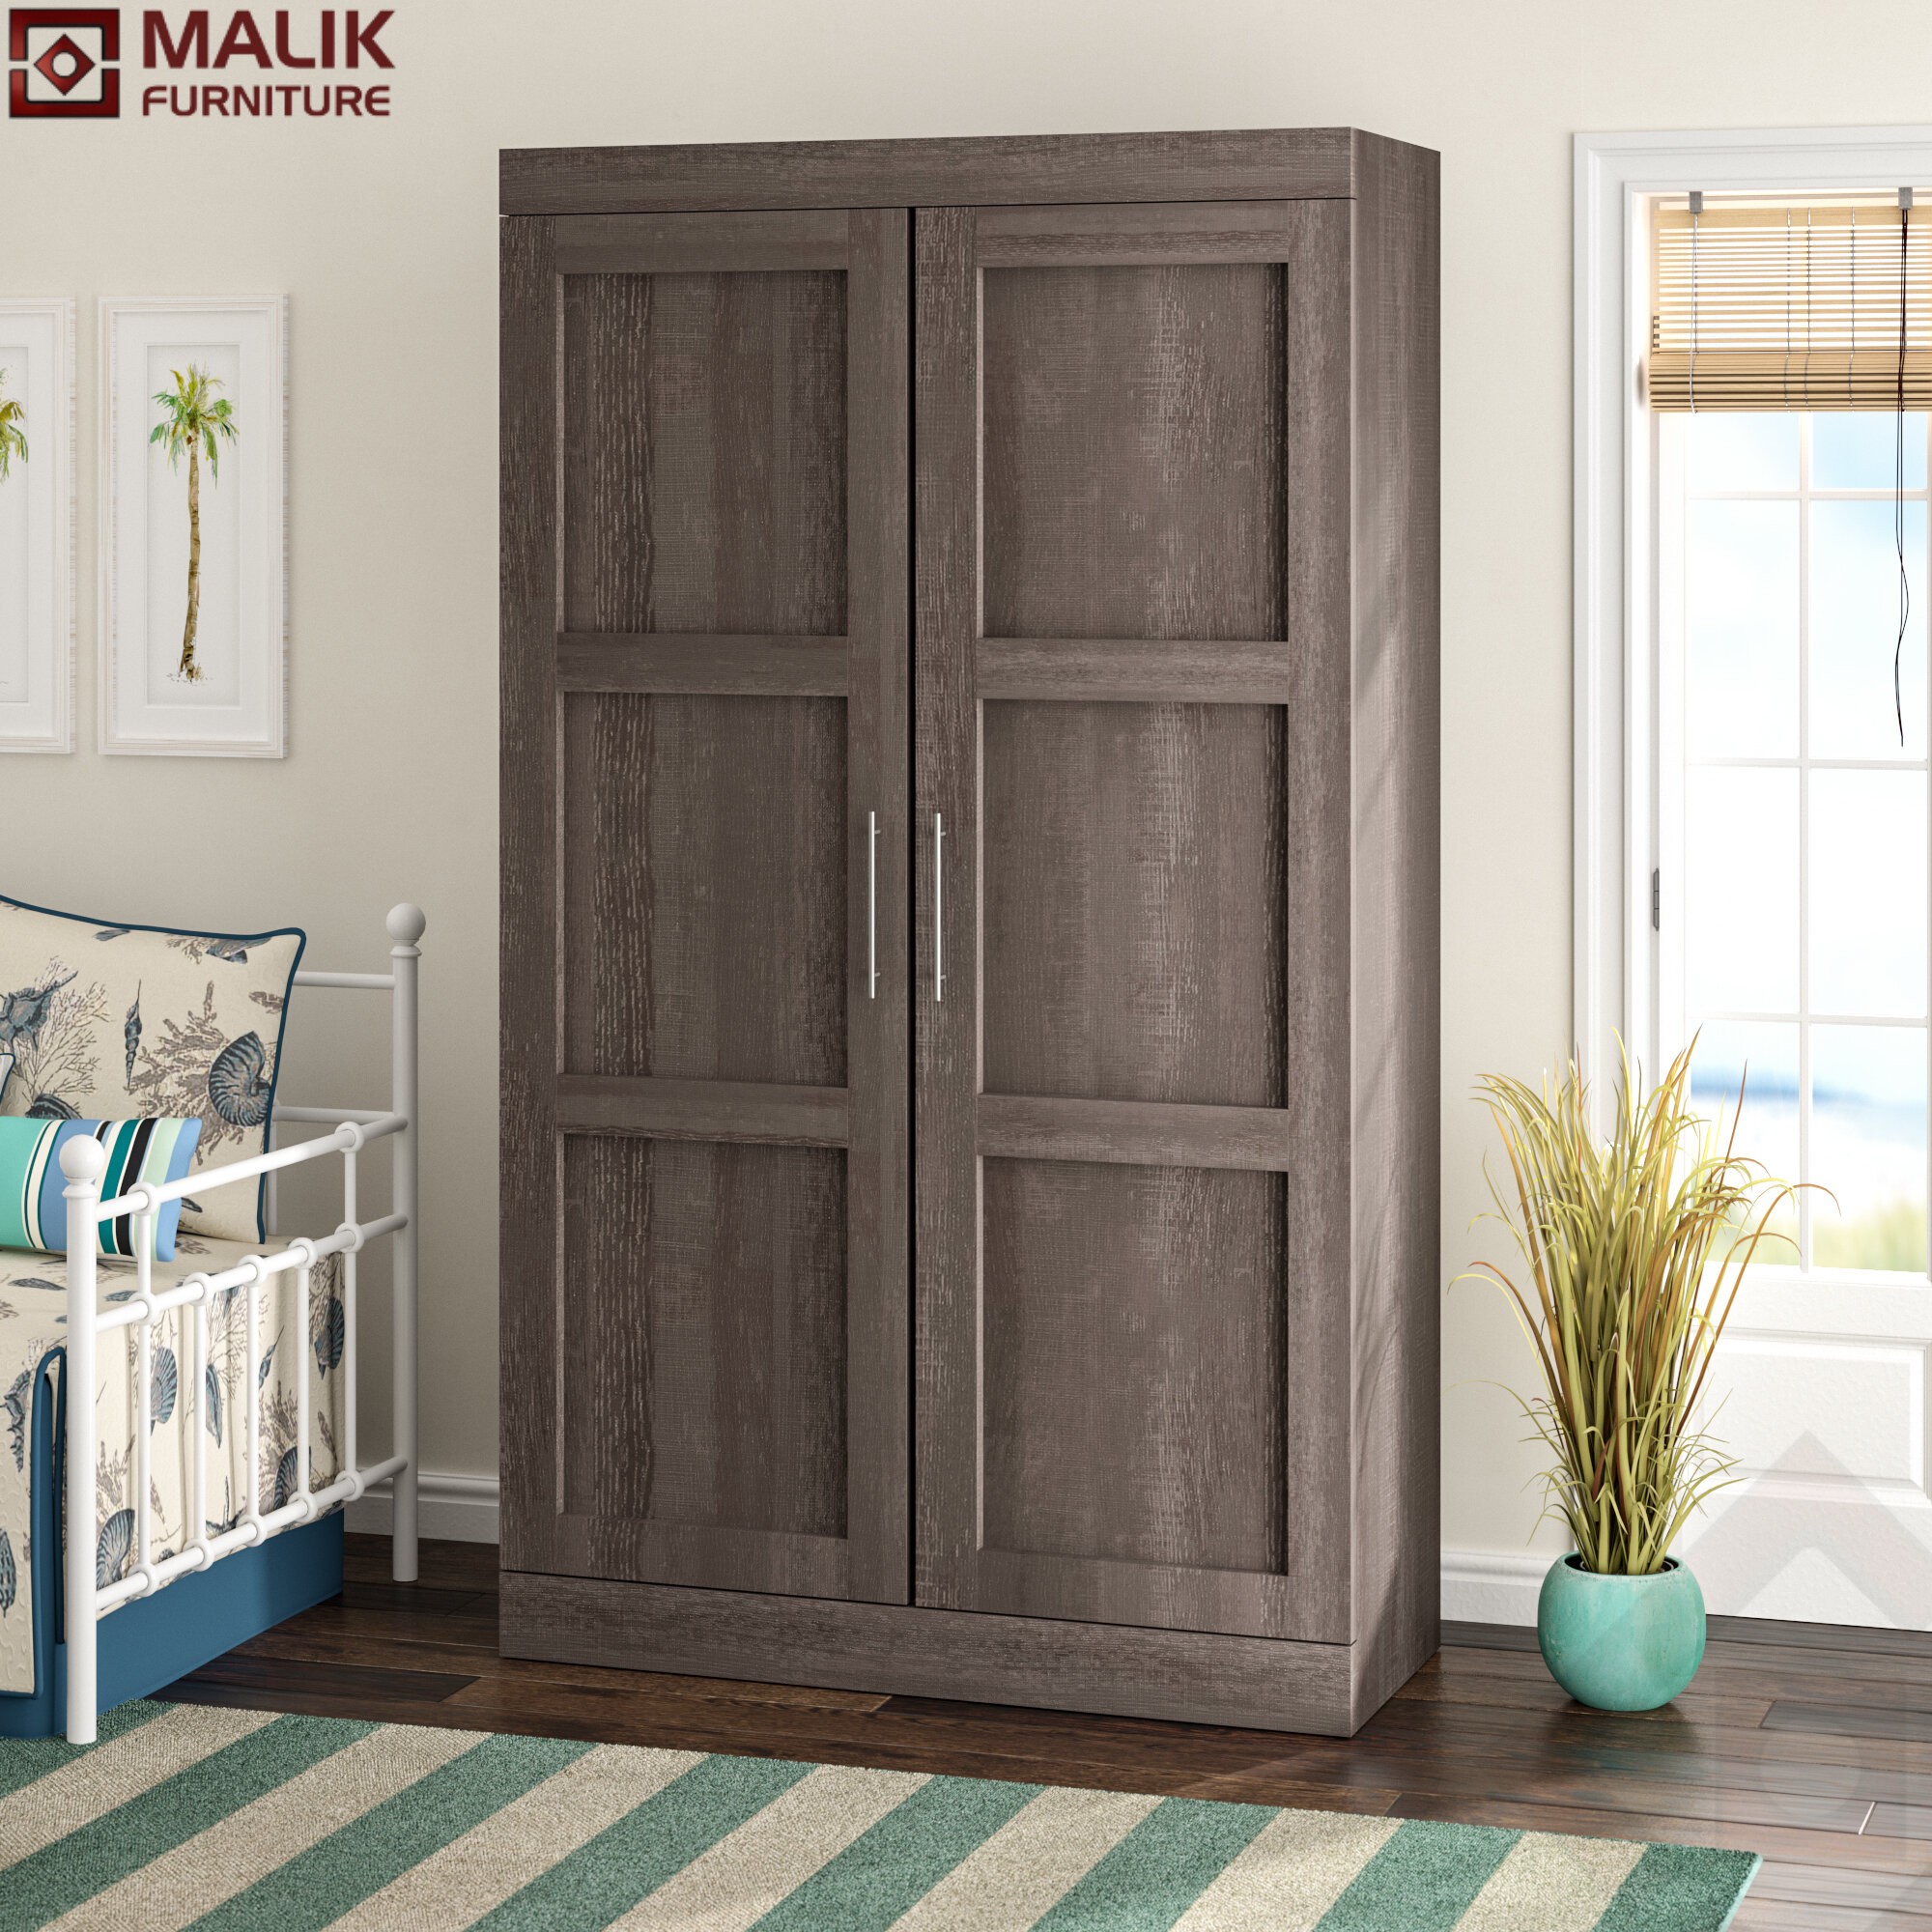 Wardrobe 57 - Malik Furniture®